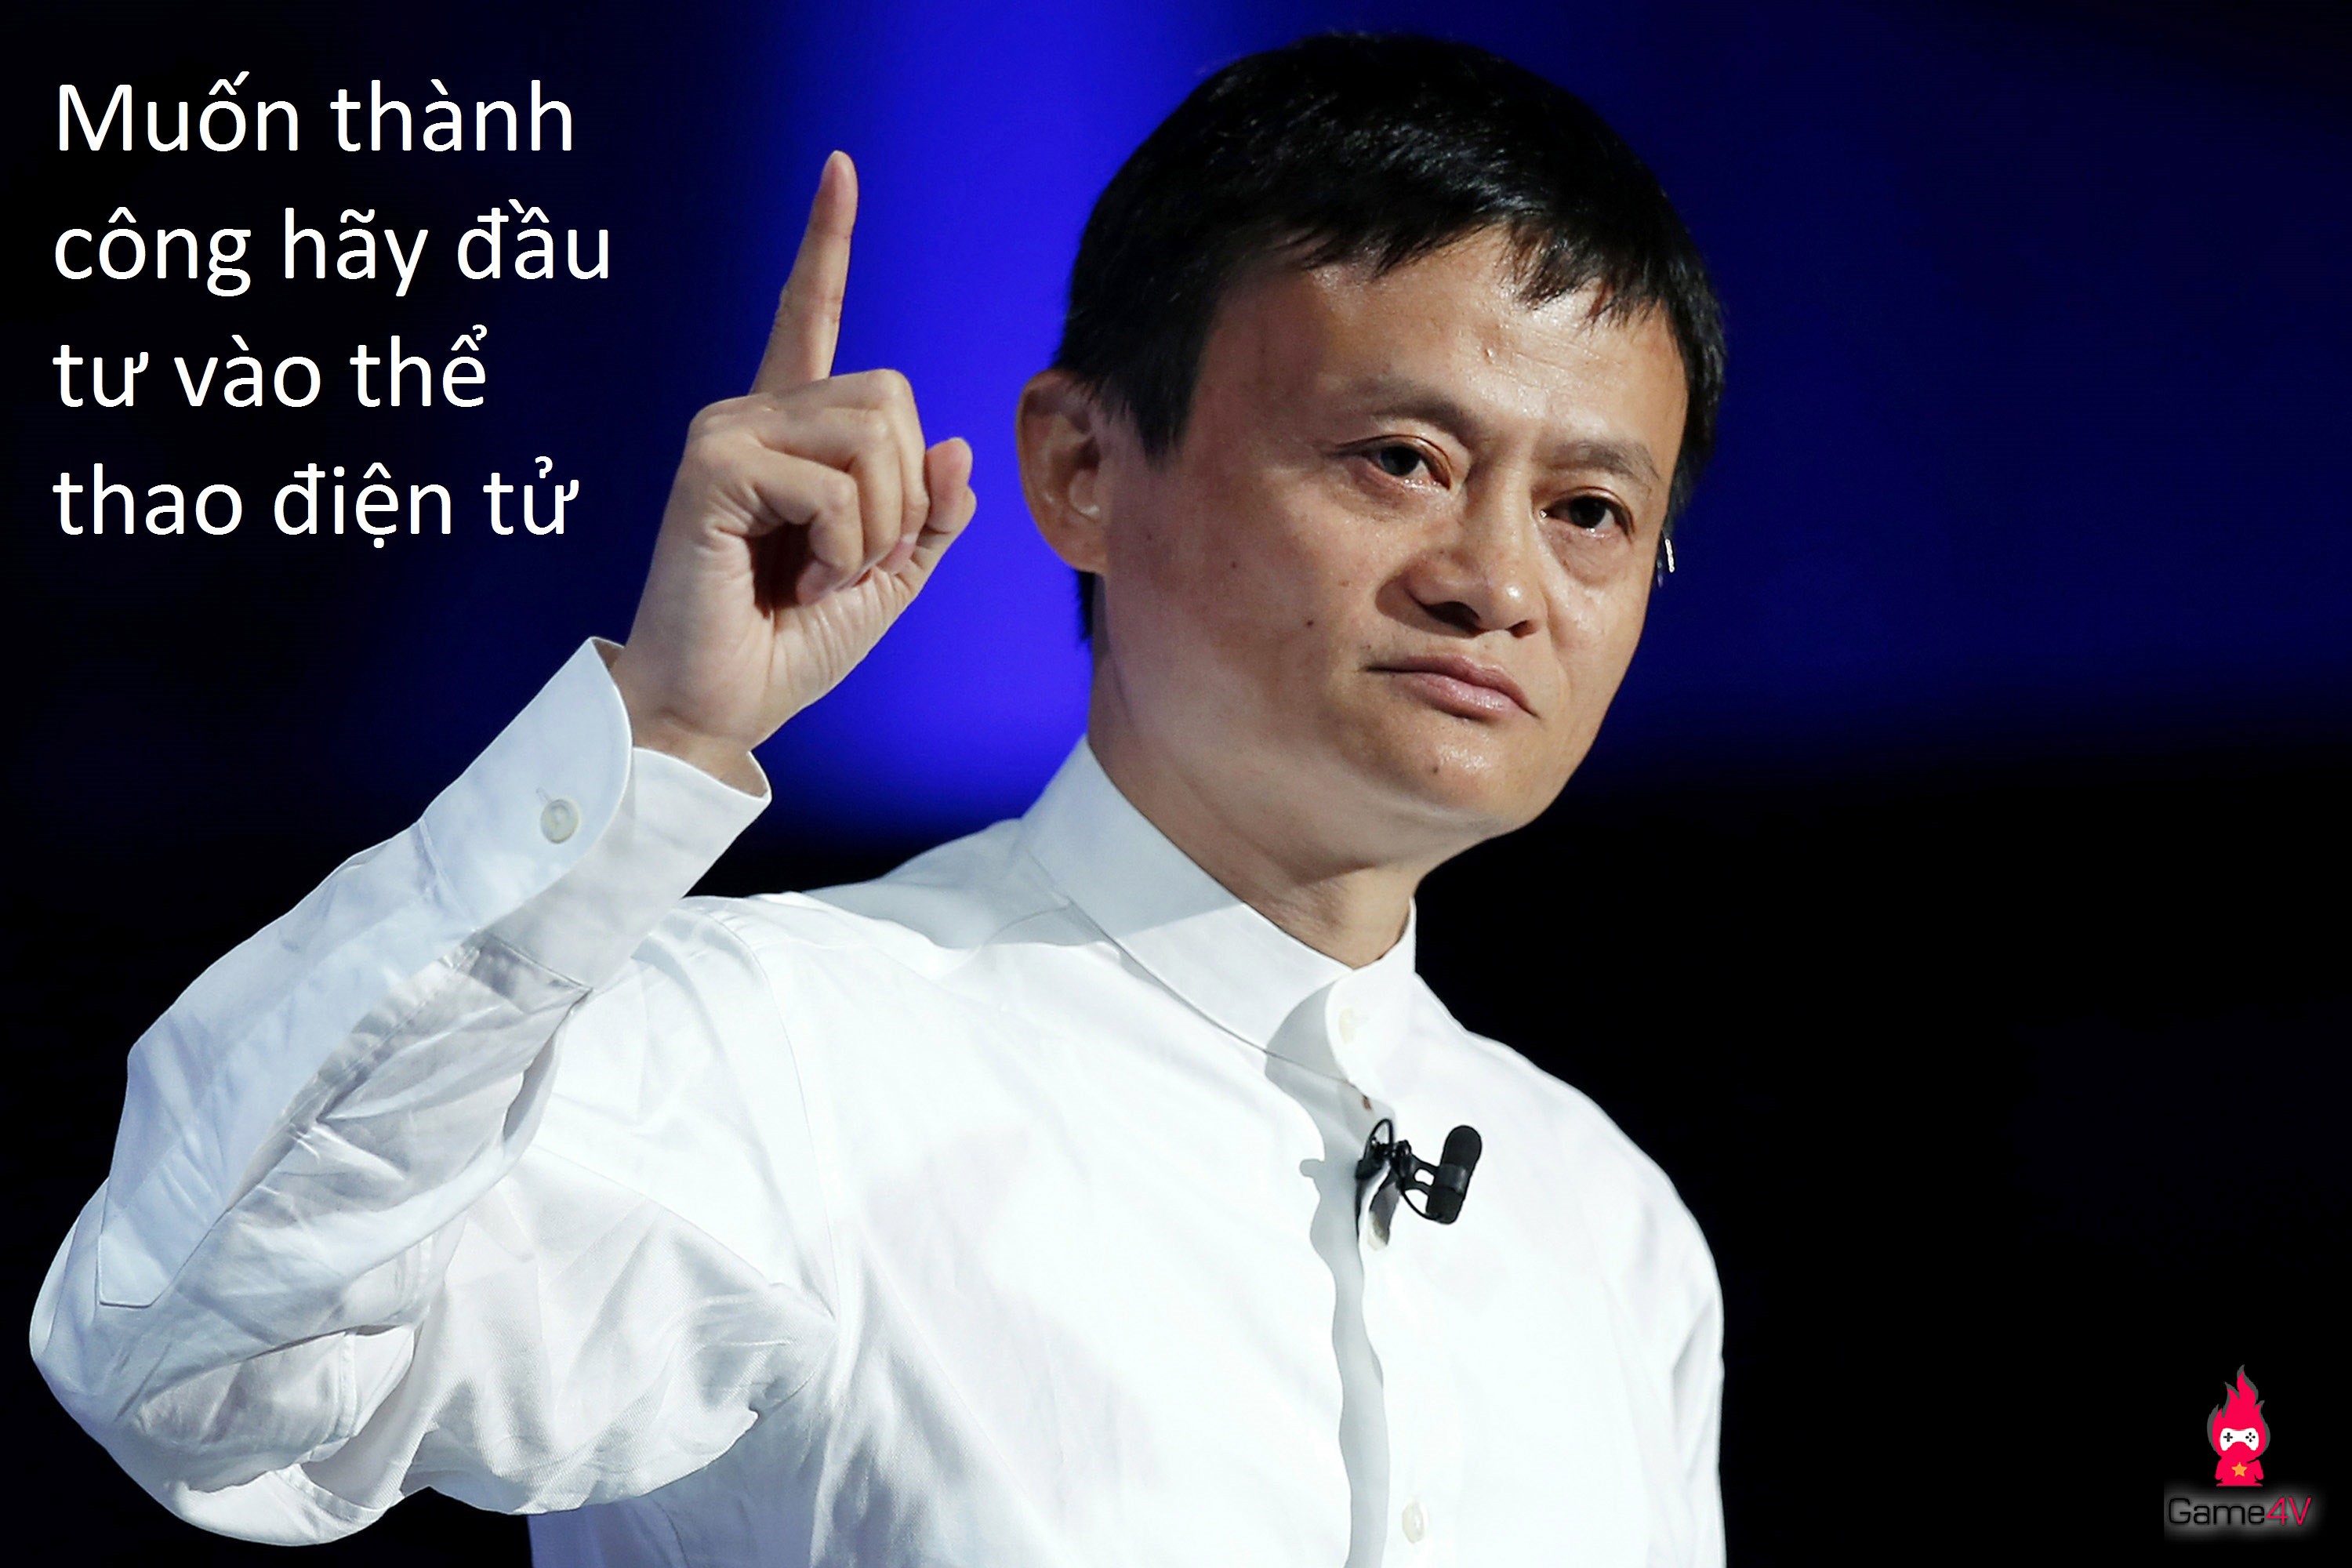 Jack Ma chính thức đầu tư 5.5 triệu $ vào thể thao điện tử